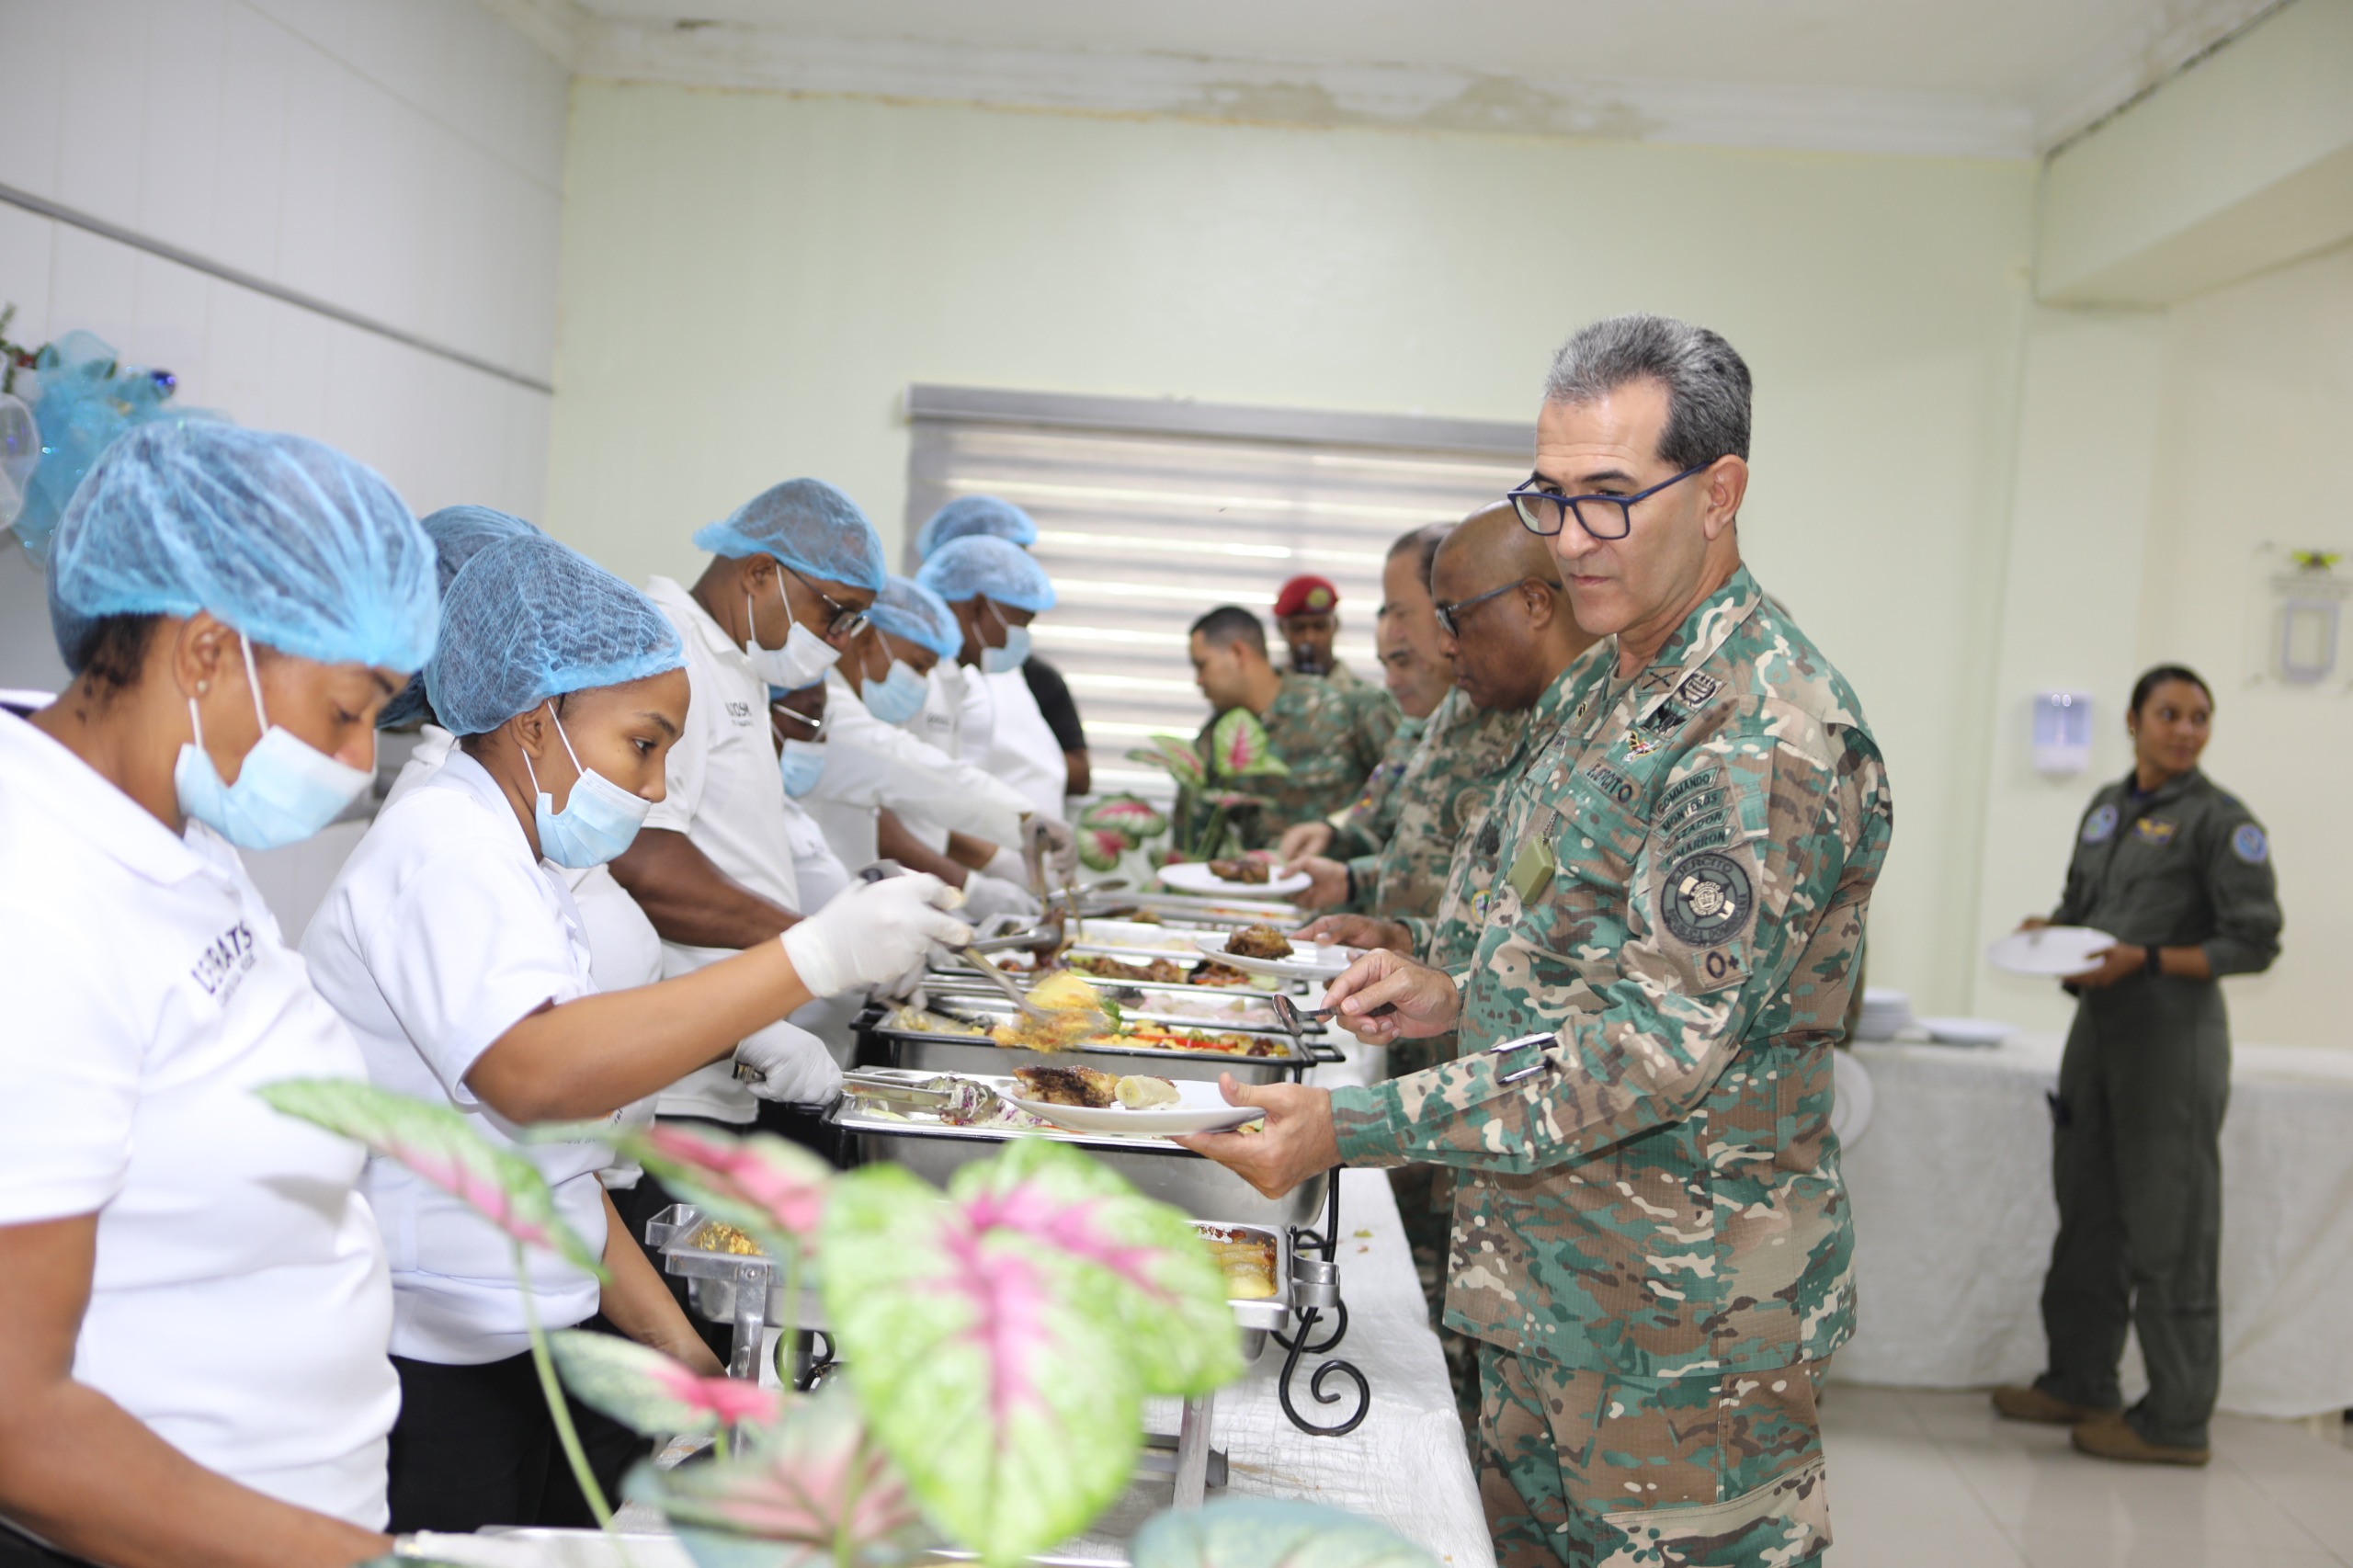 Ministro de Defensa almuerza con alistados, asimilados y contratados del Ministerio de Defensa 1